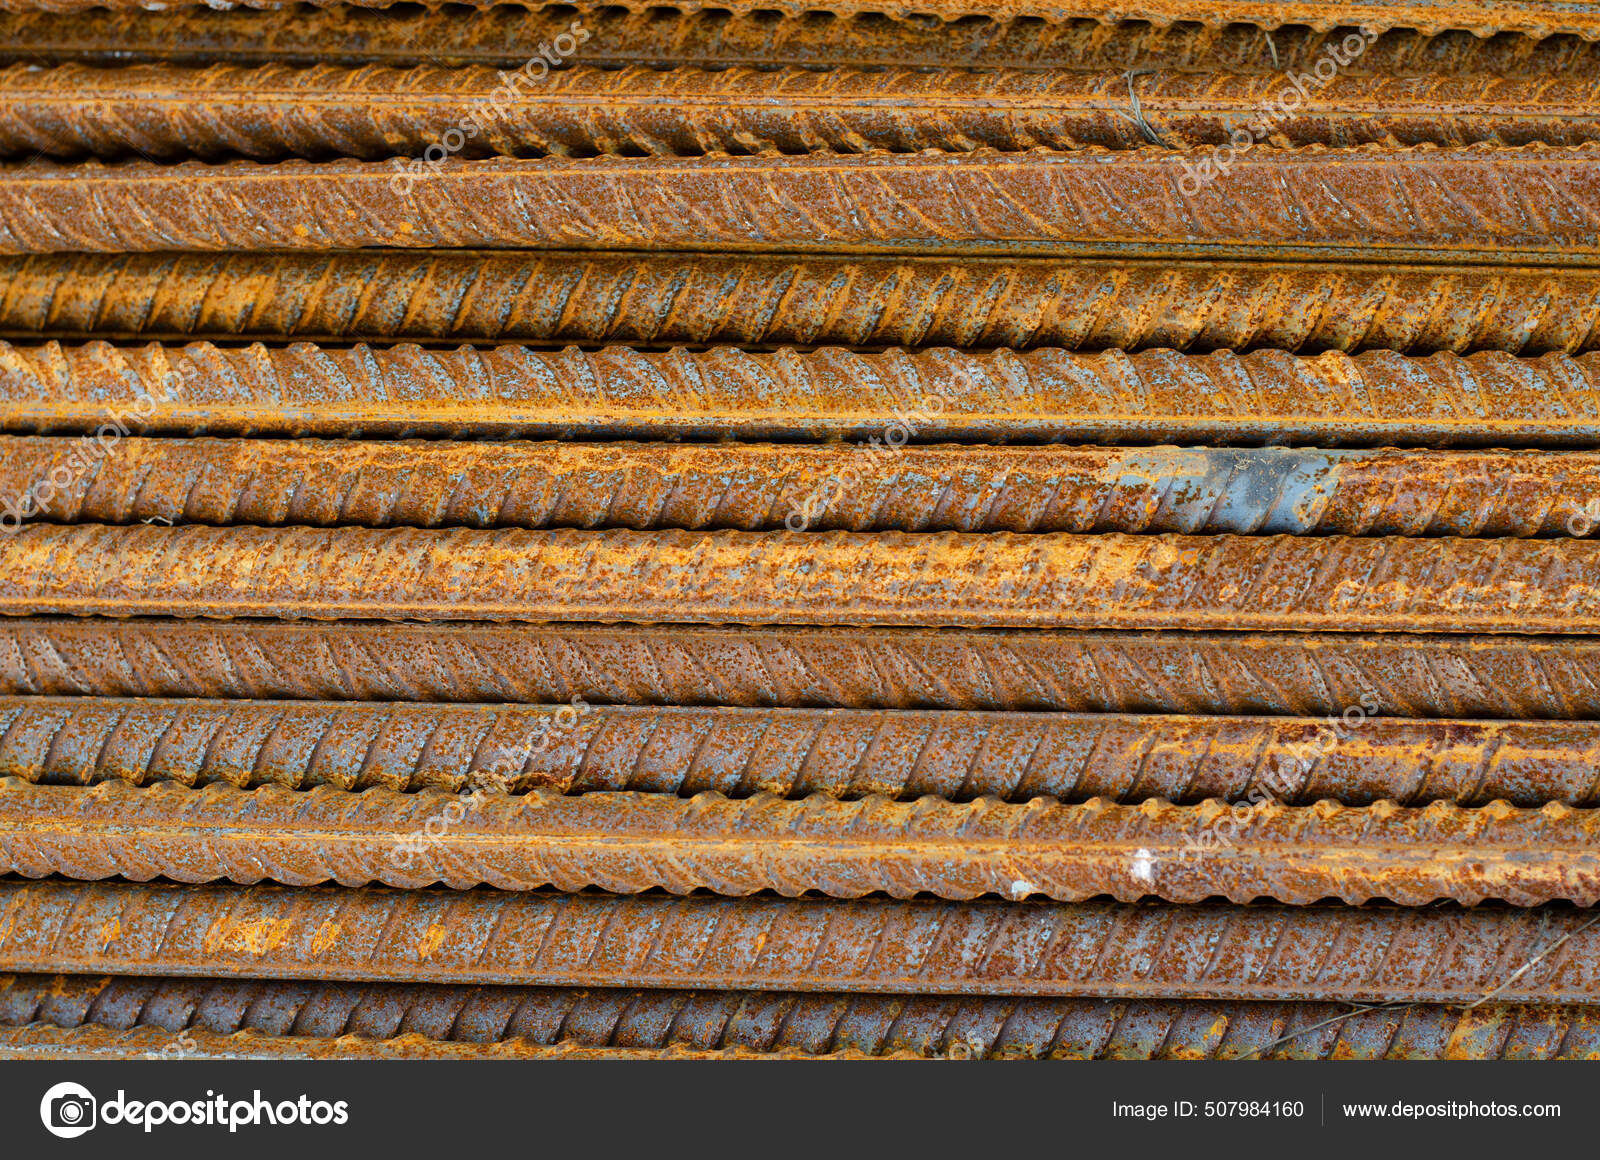 Metals that rust фото 78